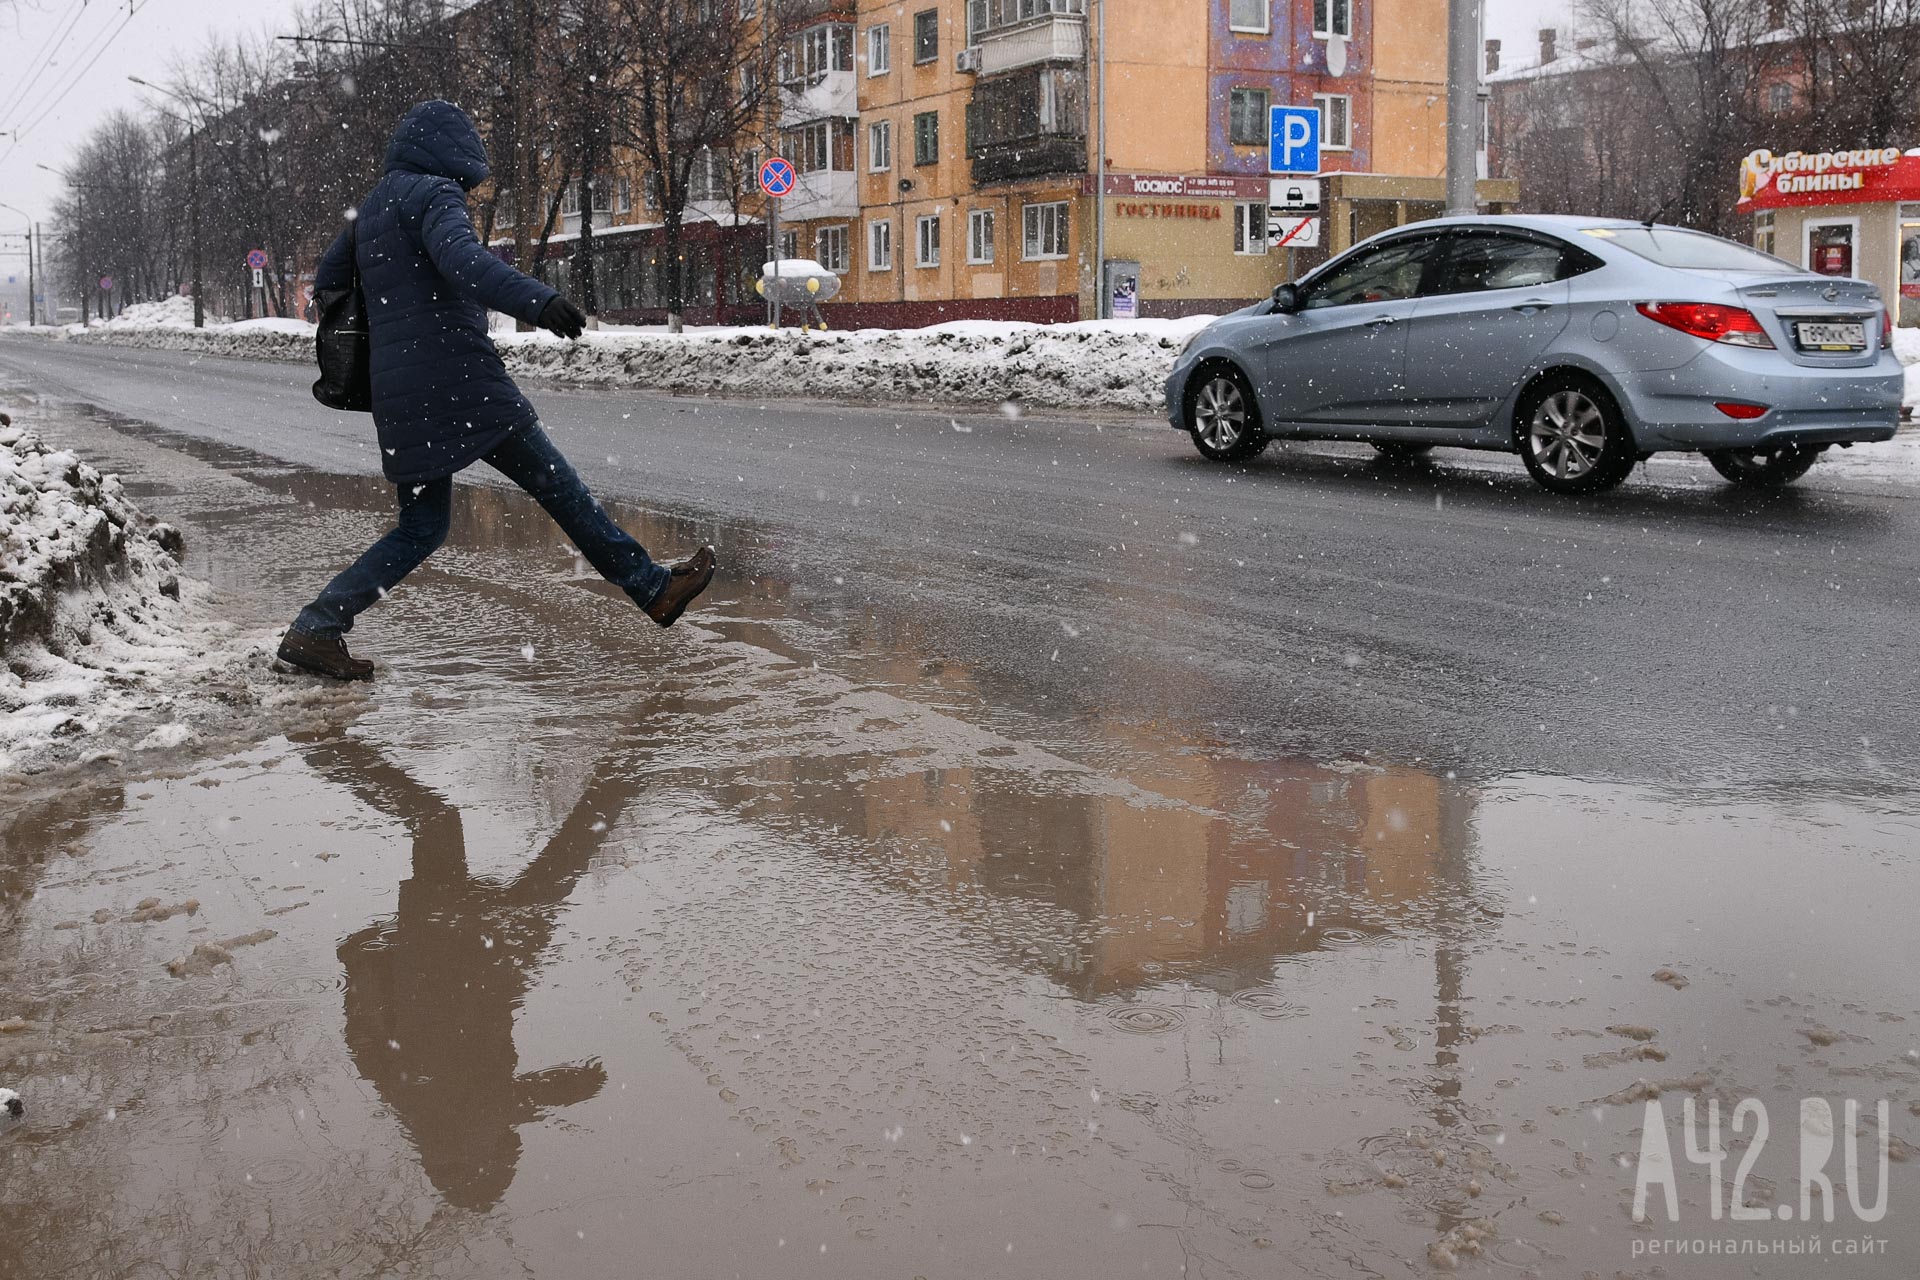 от -12 до +7: синоптики дали ближайший прогноз на погоду в Кузбассе